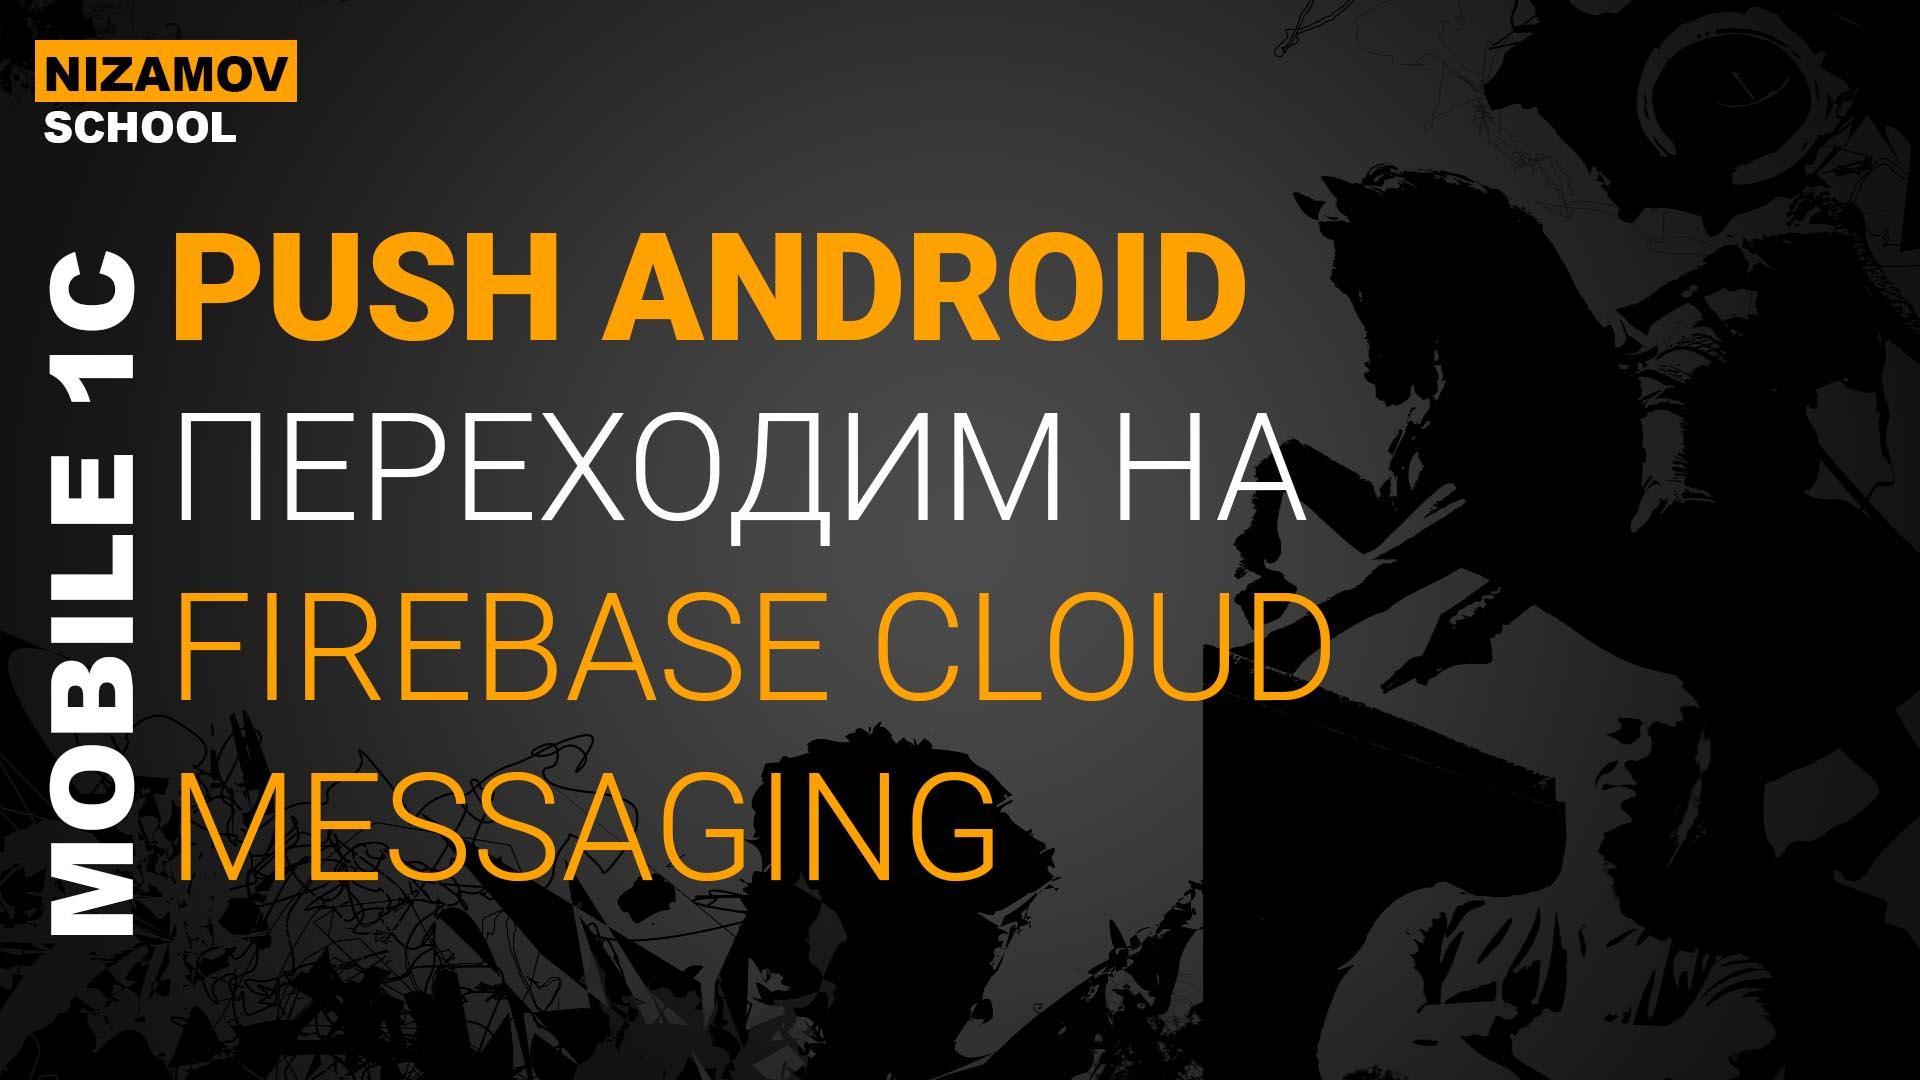 Firebase cloud messaging